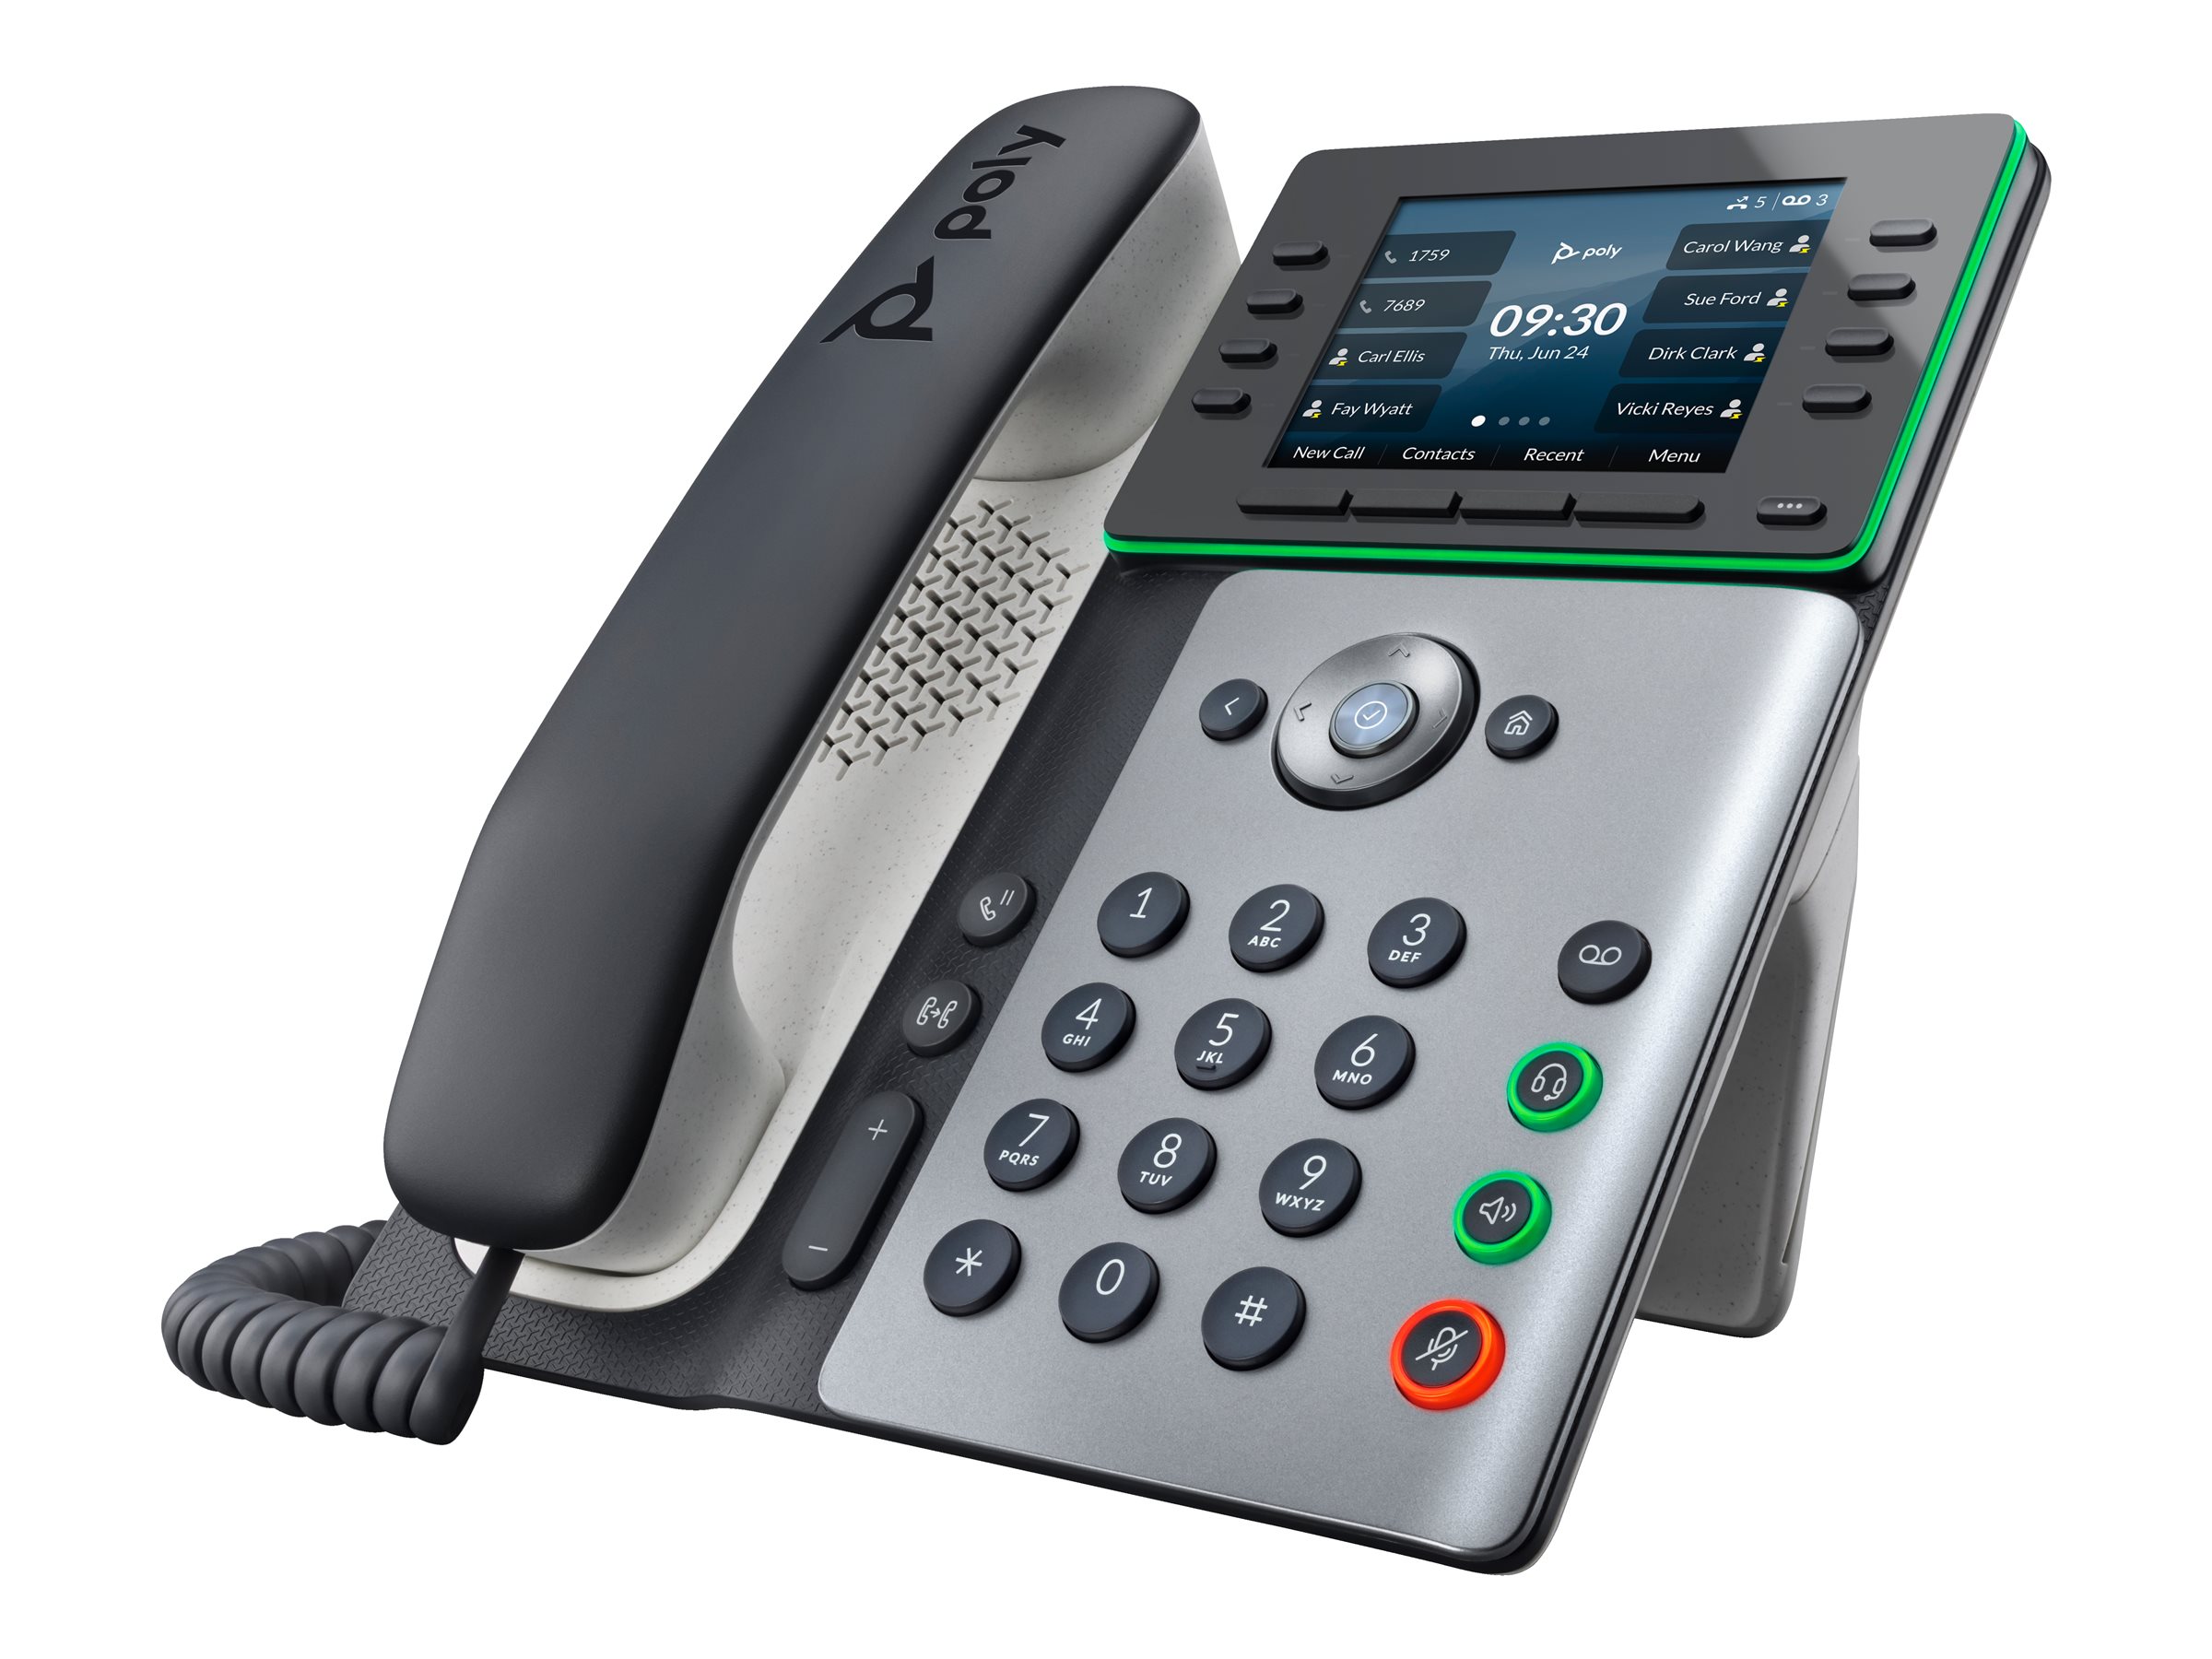 Poly Edge E300 - VoIP-Telefon mit Rufnummernanzeige/Anklopffunktion - dreiweg Anruffunktion - SIP, SDP